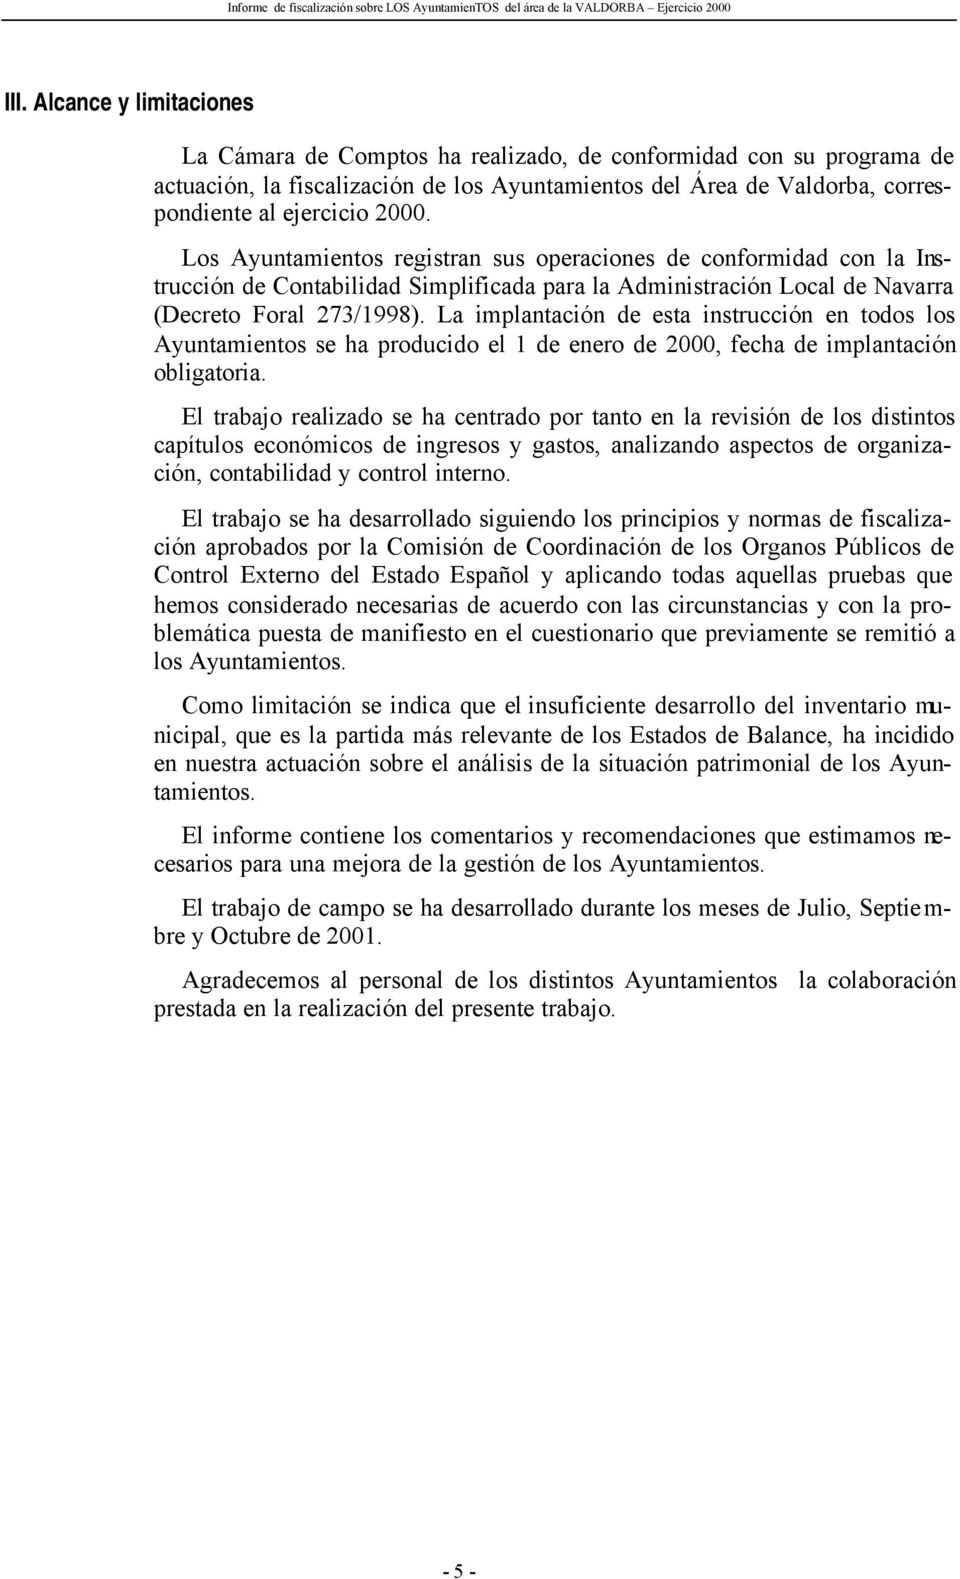 Los Ayuntamientos registran sus operaciones de conformidad con la Instrucción de Contabilidad Simplificada para la Administración Local de Navarra (Decreto Foral 273/1998).